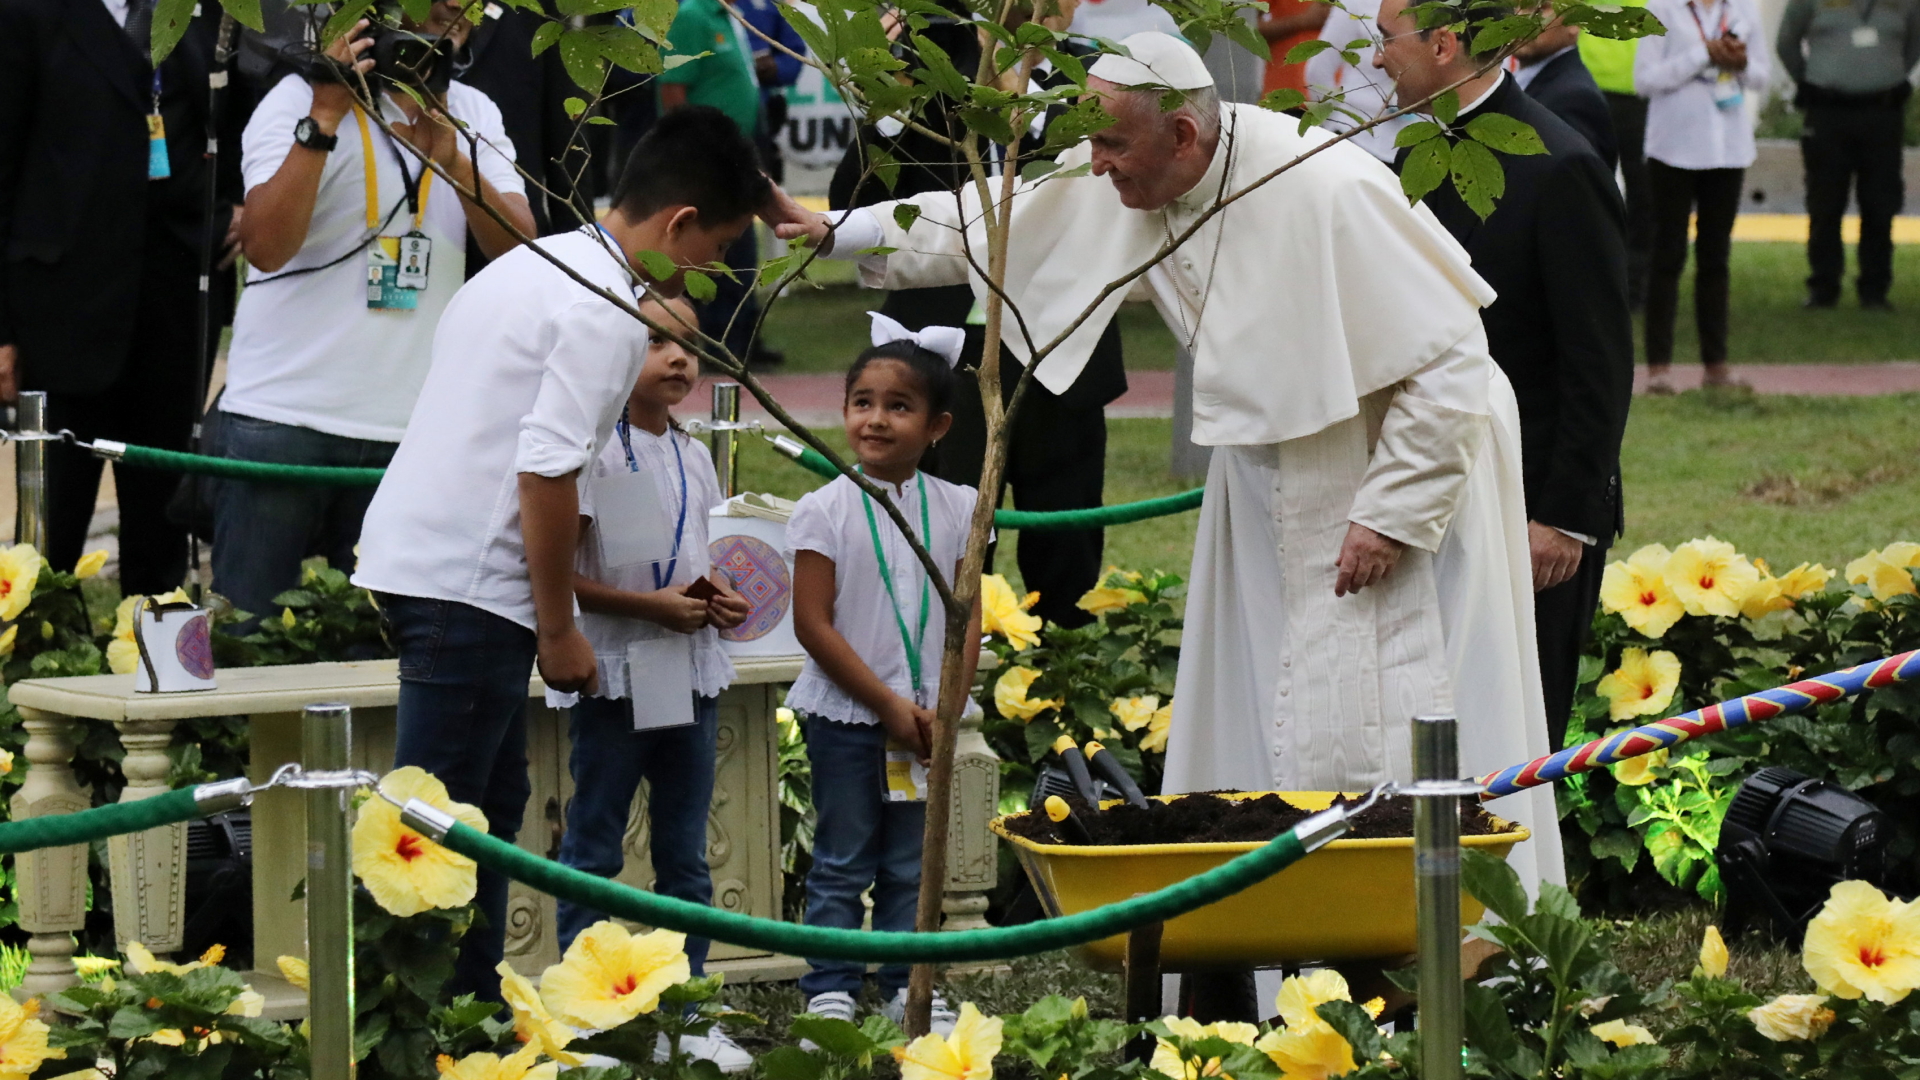 Kinder überreichen Papst Franziskus in Villavicencio Setzlinge zum Segnen. Sie sollen im "Wald der Aussöhnung" angepflanzt werden. | REUTERS